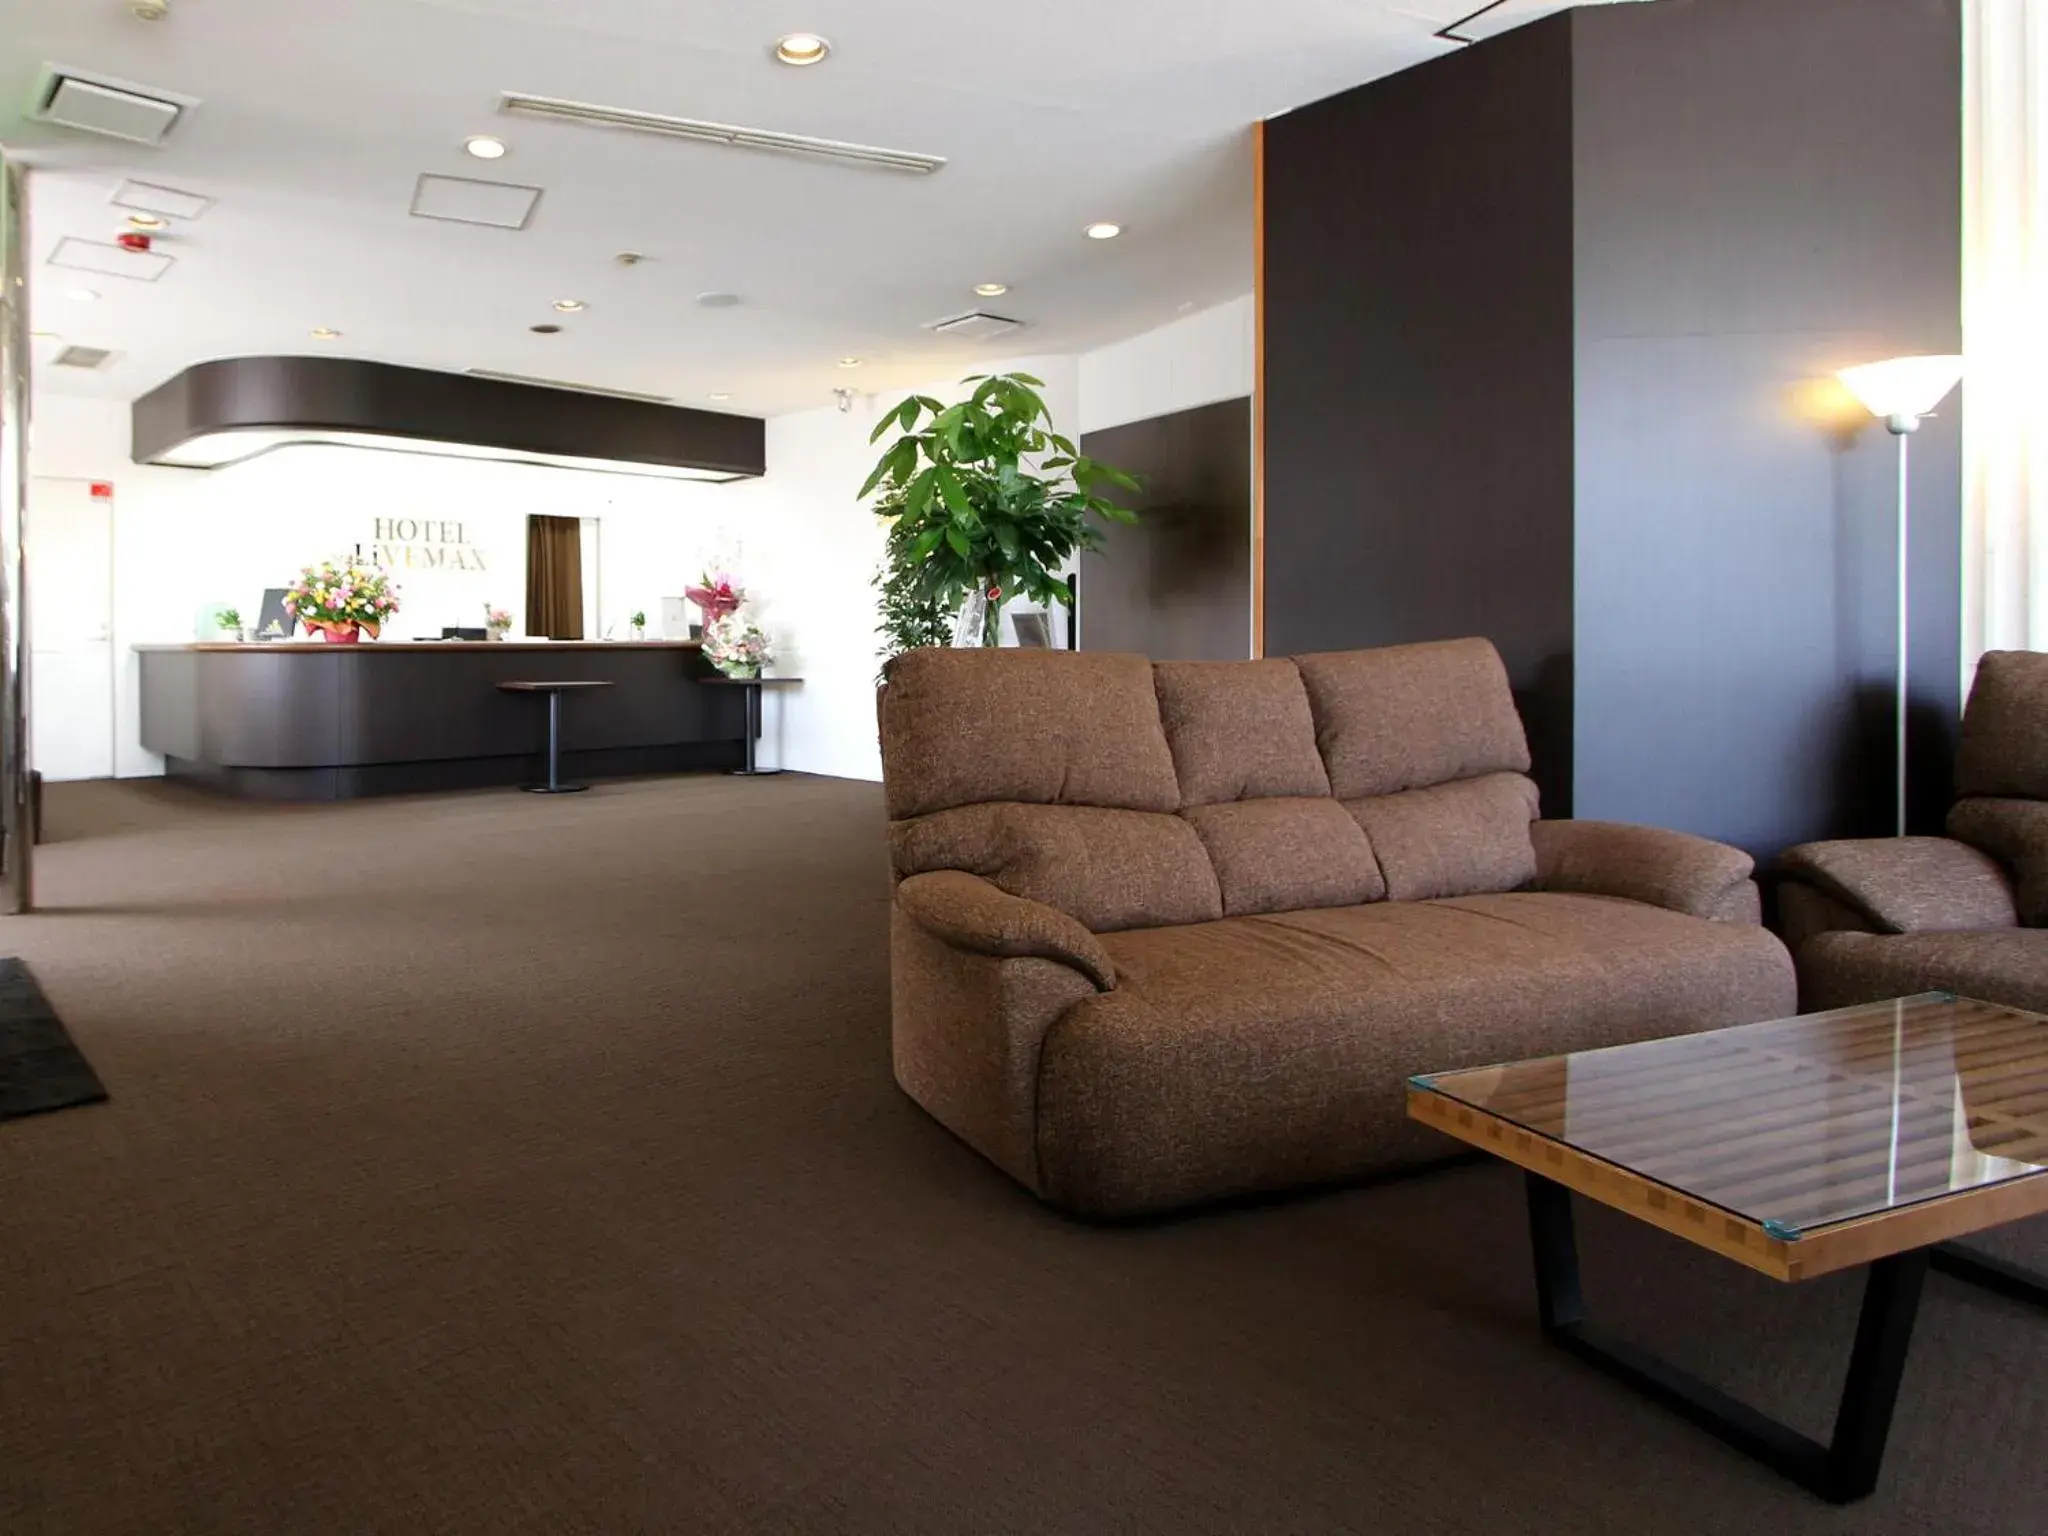 Lobby or reception, Lobby/Reception in HOTEL LiVEMAX BUDGET Utsunomiya